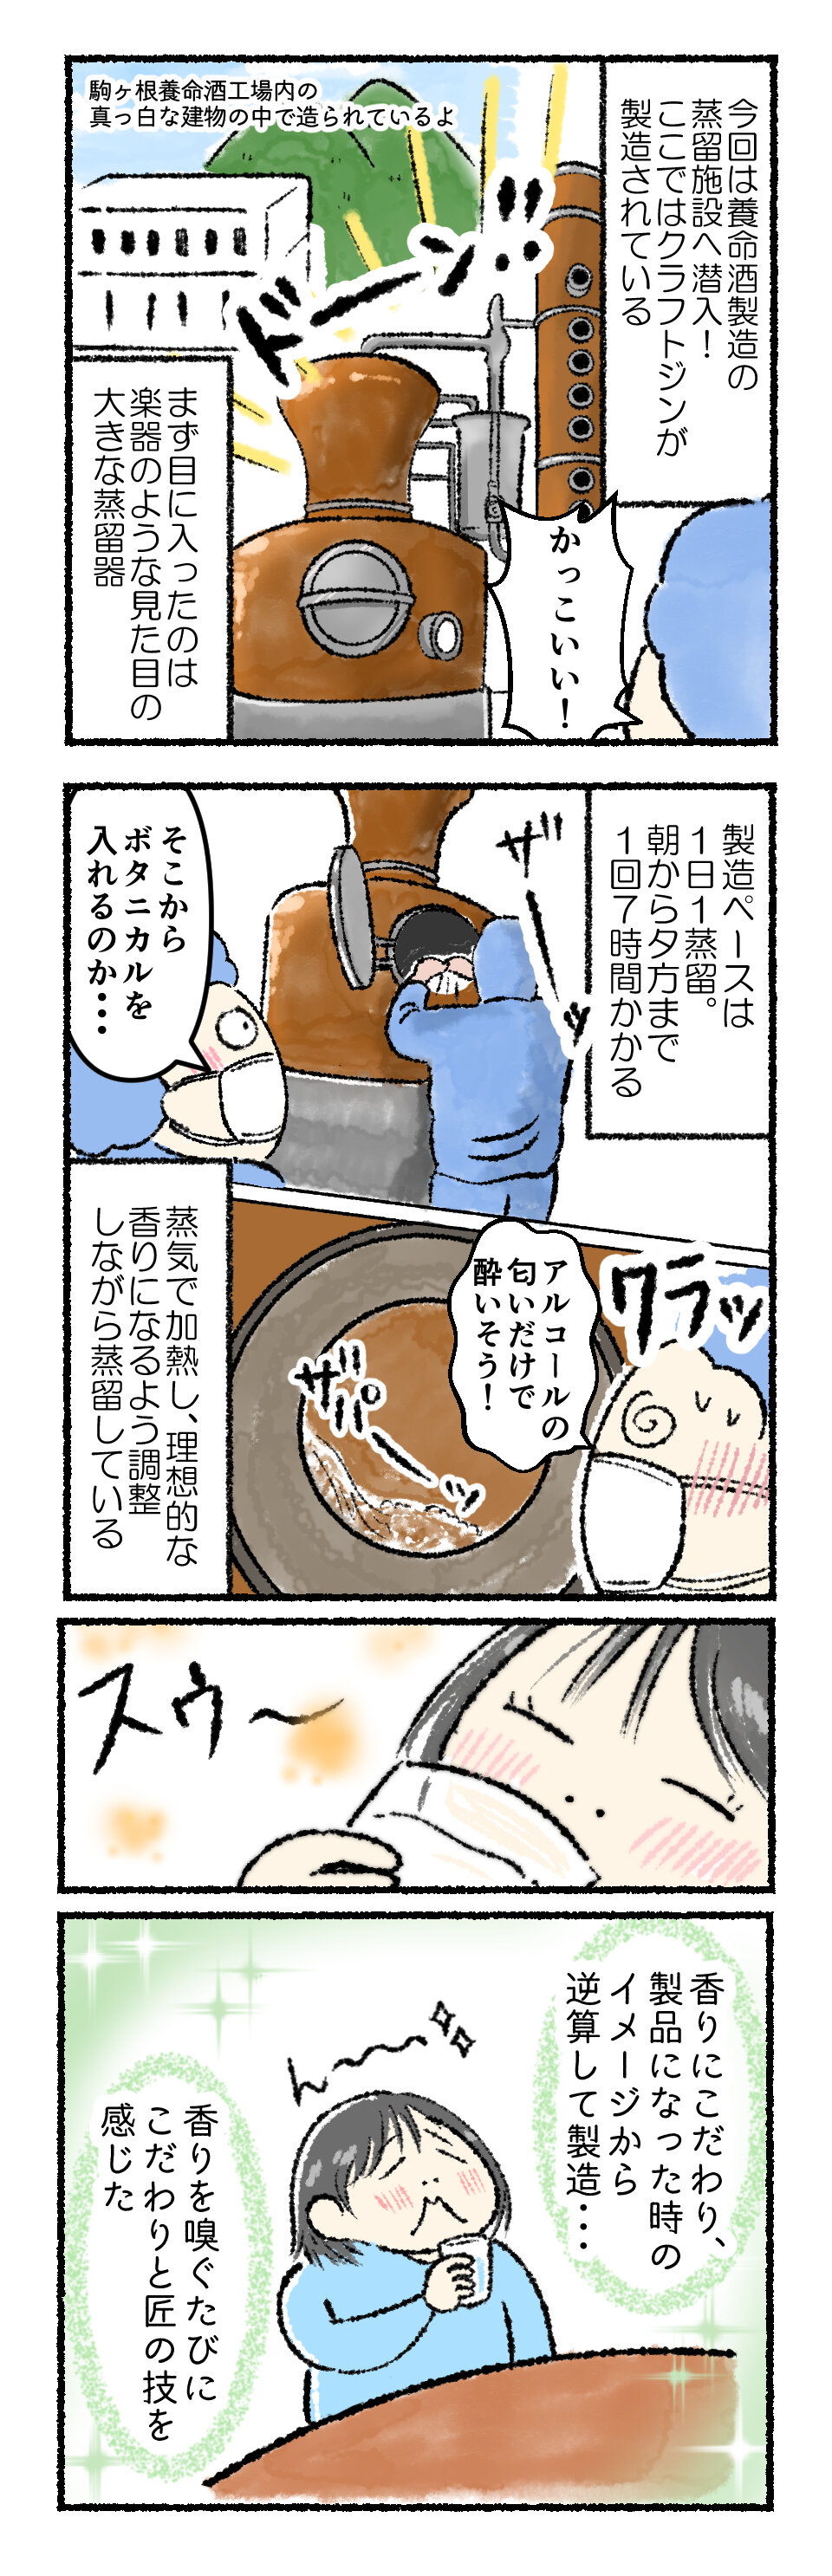 養命酒製造のクラフトジン蒸留施設見学漫画.jpg